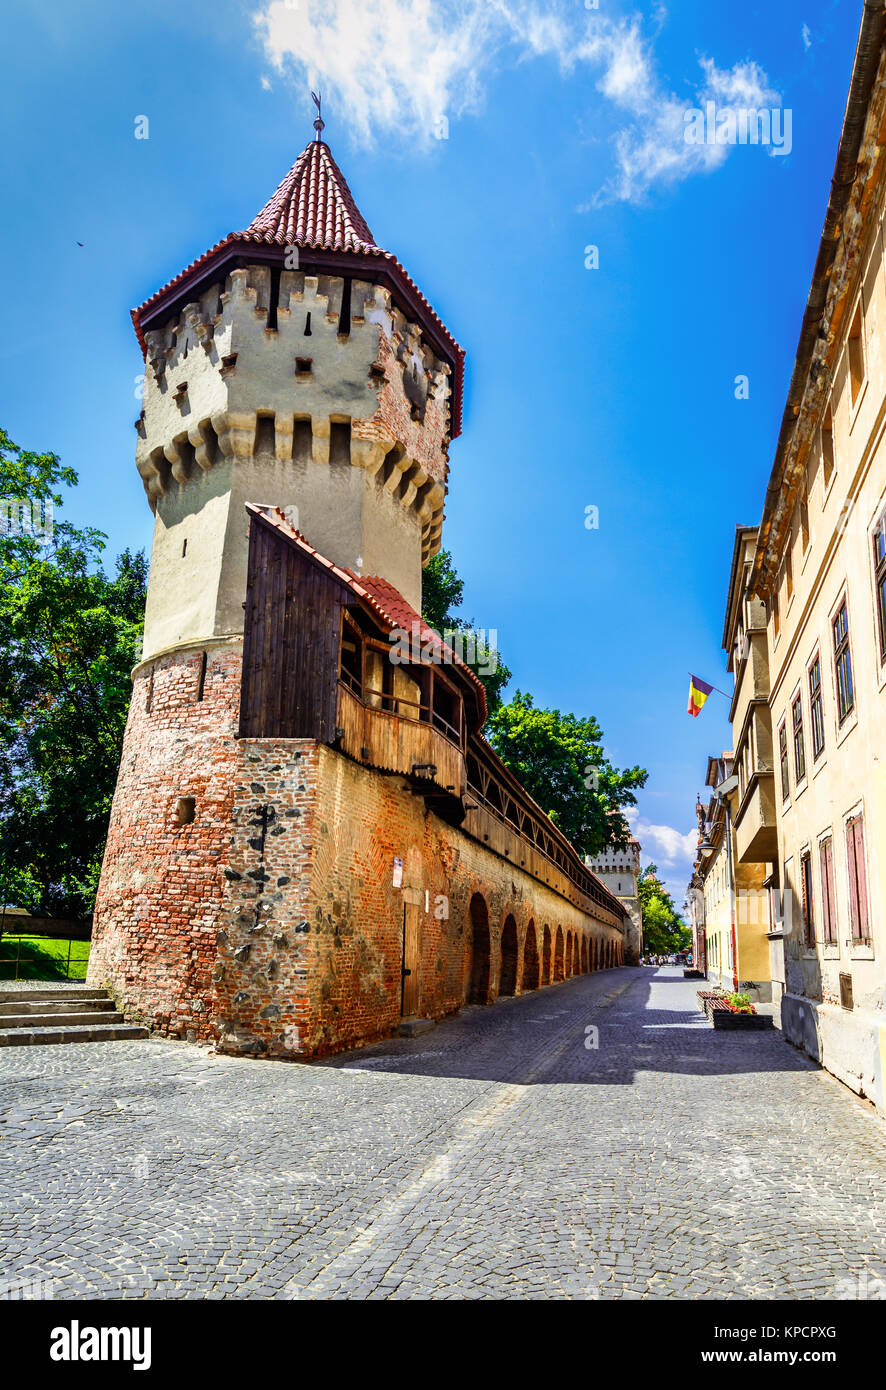 Sibiu, Romania : la famosa Torre dei falegnami - sulla strada Cetatii in una bellissima giornata. Sibiu, Transilvanya, Romania Foto Stock